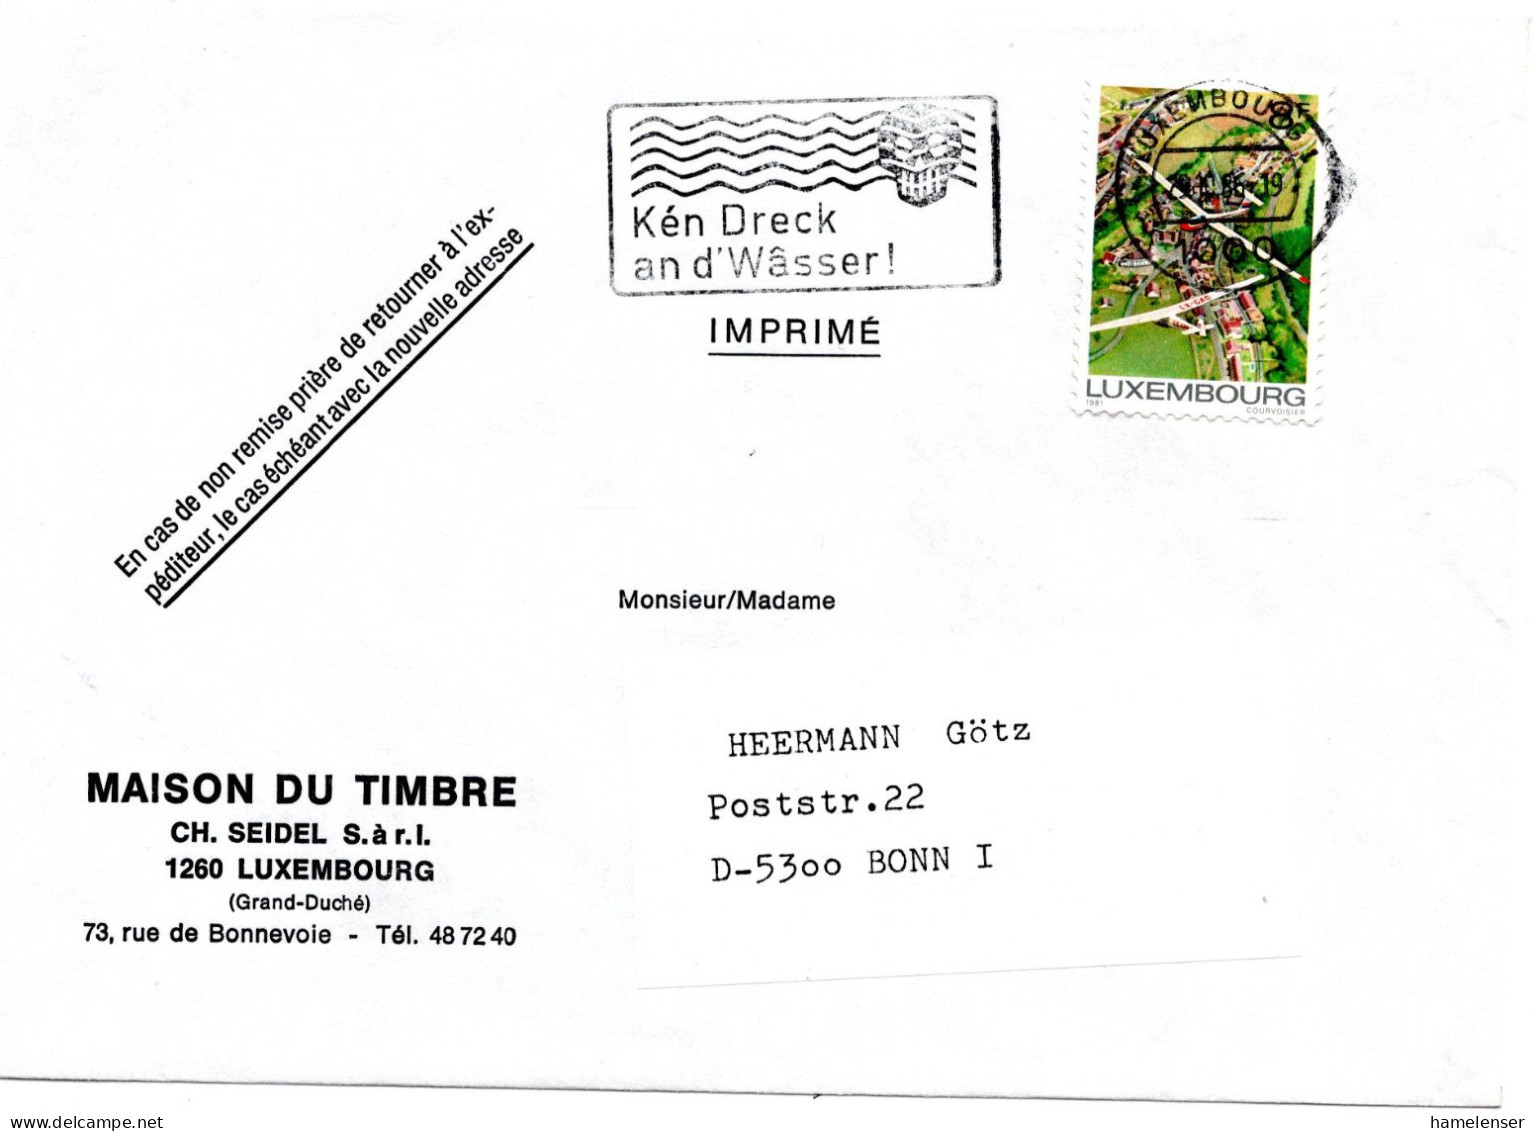 60723 - Luxemburg - 1986 - 8F Segelflug EF A DrucksBf LUXEMBOURG - KEN DRECK AN D'WASSER! -> Westdeutschland - Environment & Climate Protection